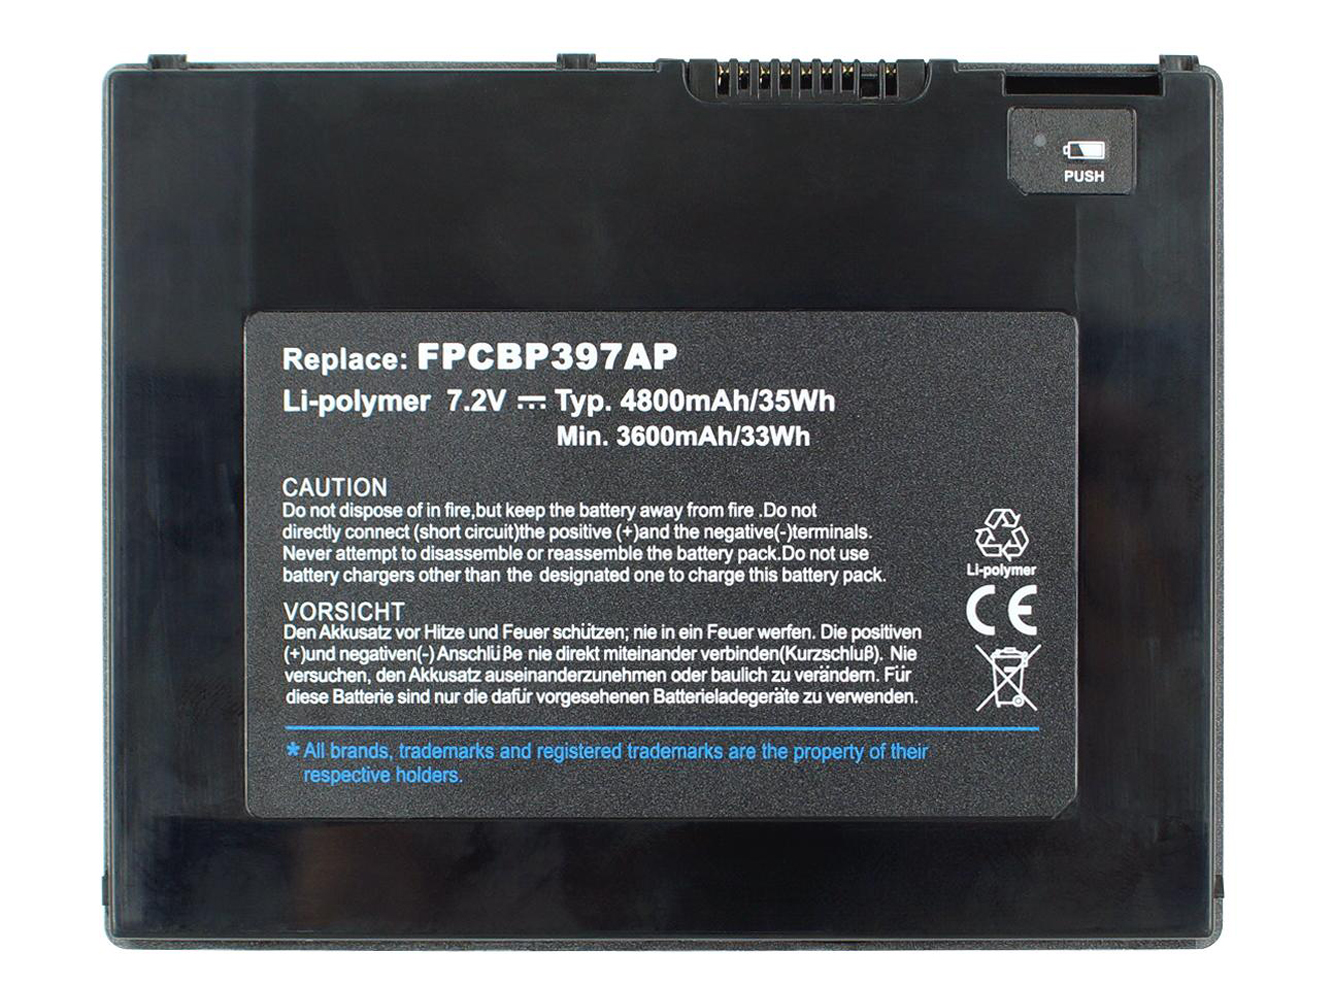 Repuesto compatible para batería de portátil FUJITSU Stylistic Q572, Stylistic Q572-W7D-001, Stylistic Q572-W8-001, Stylistic Q572/G